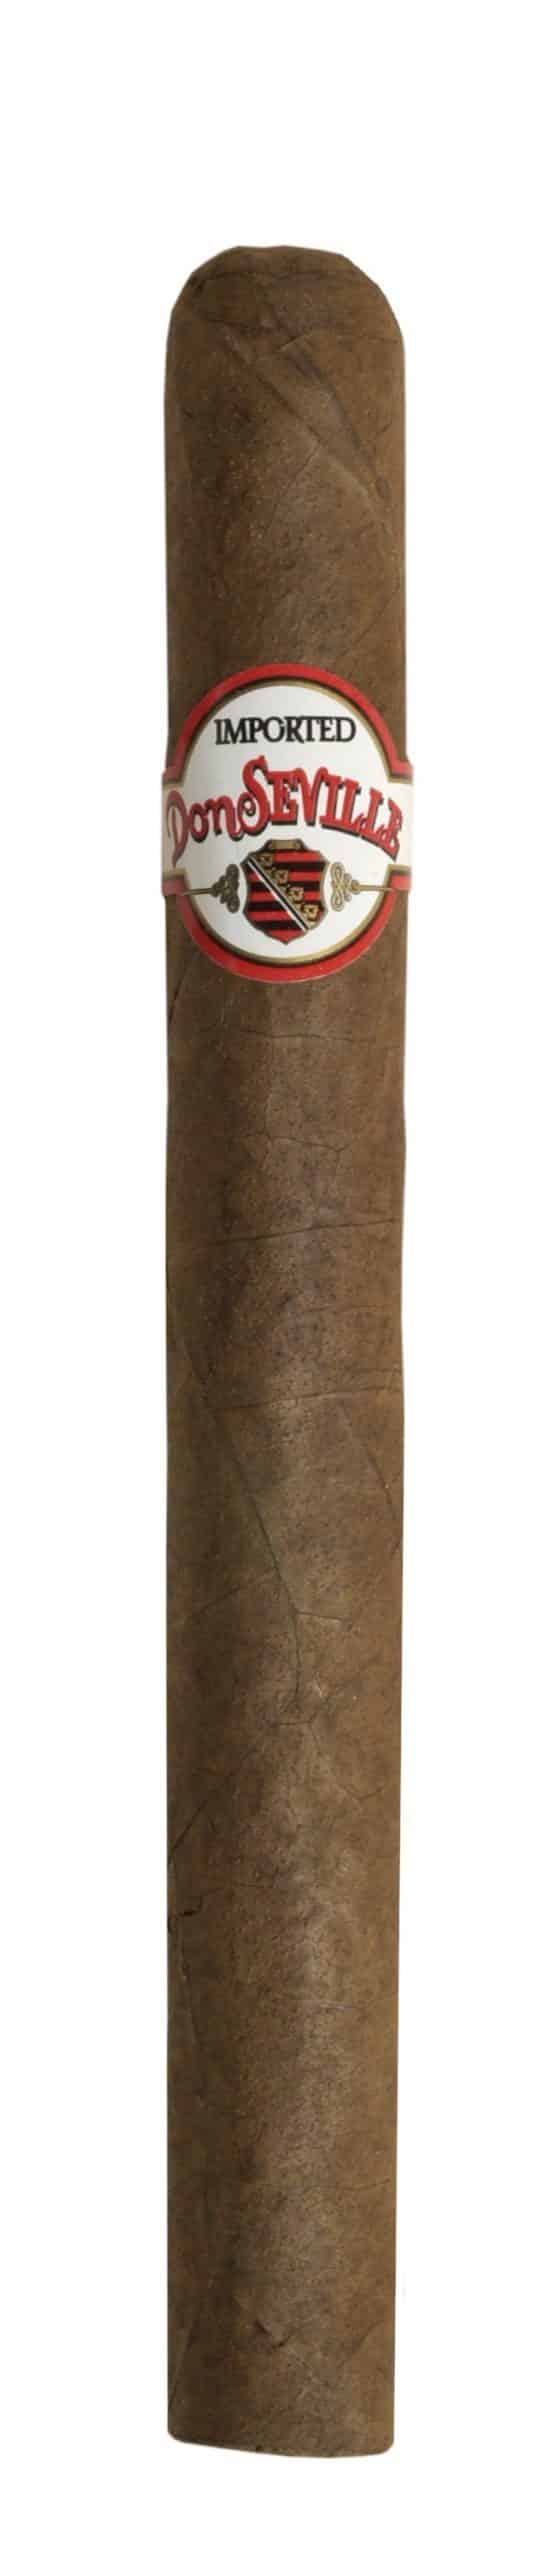 don seville monoco single cigar